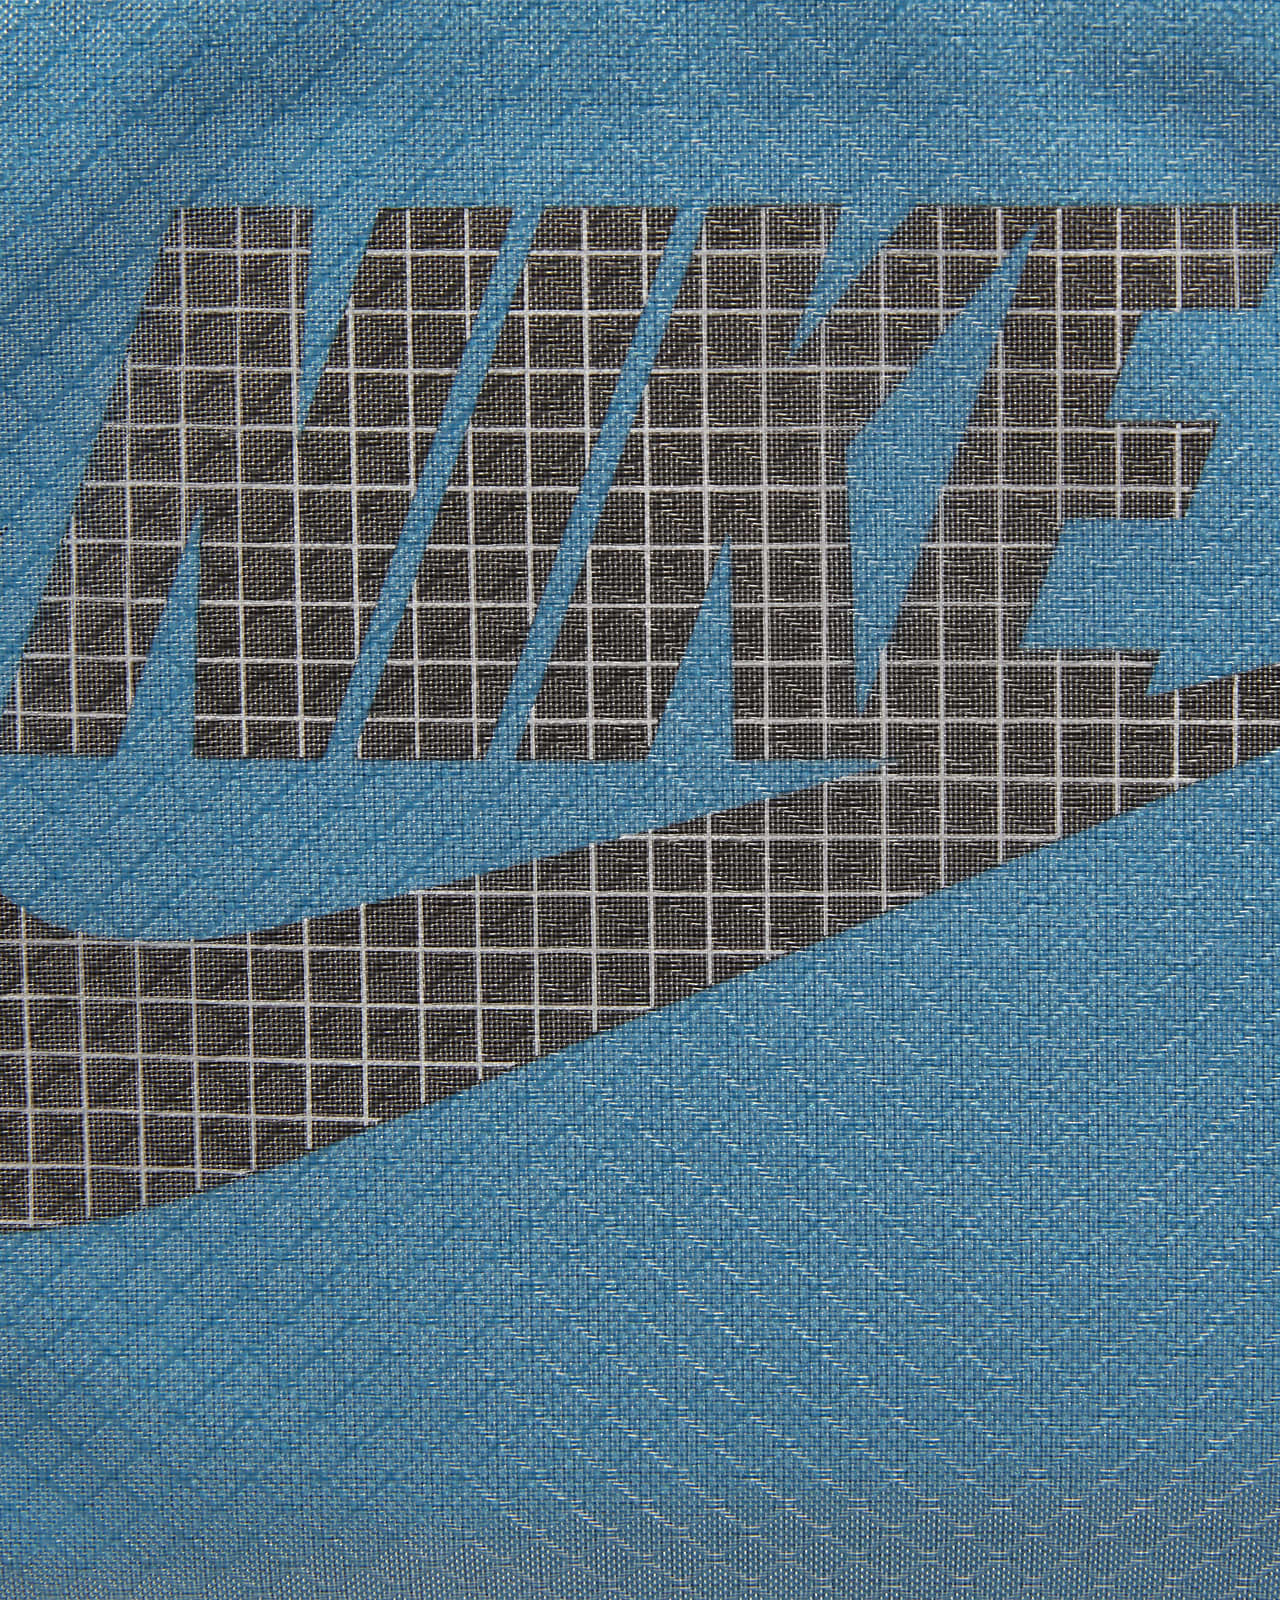 Nike Tech Hip Pack (10L)